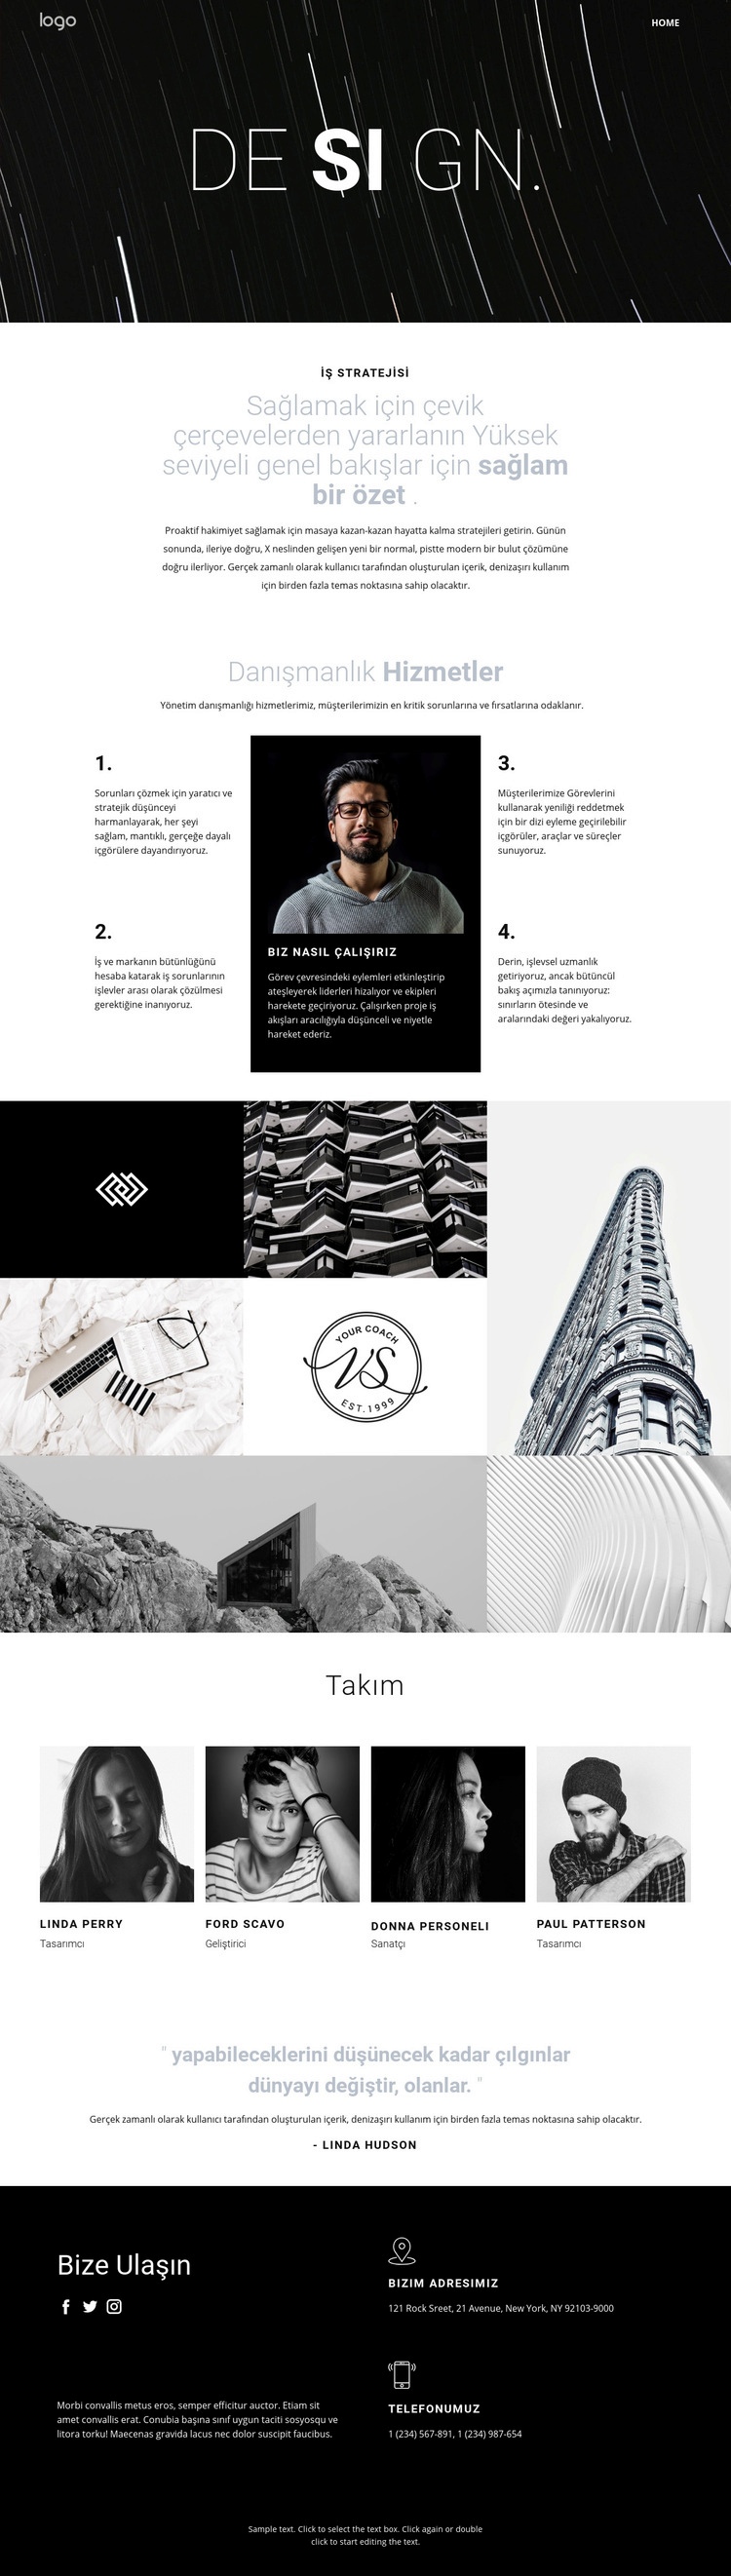 Tasarım ve yaratıcı sanat Web sitesi tasarımı